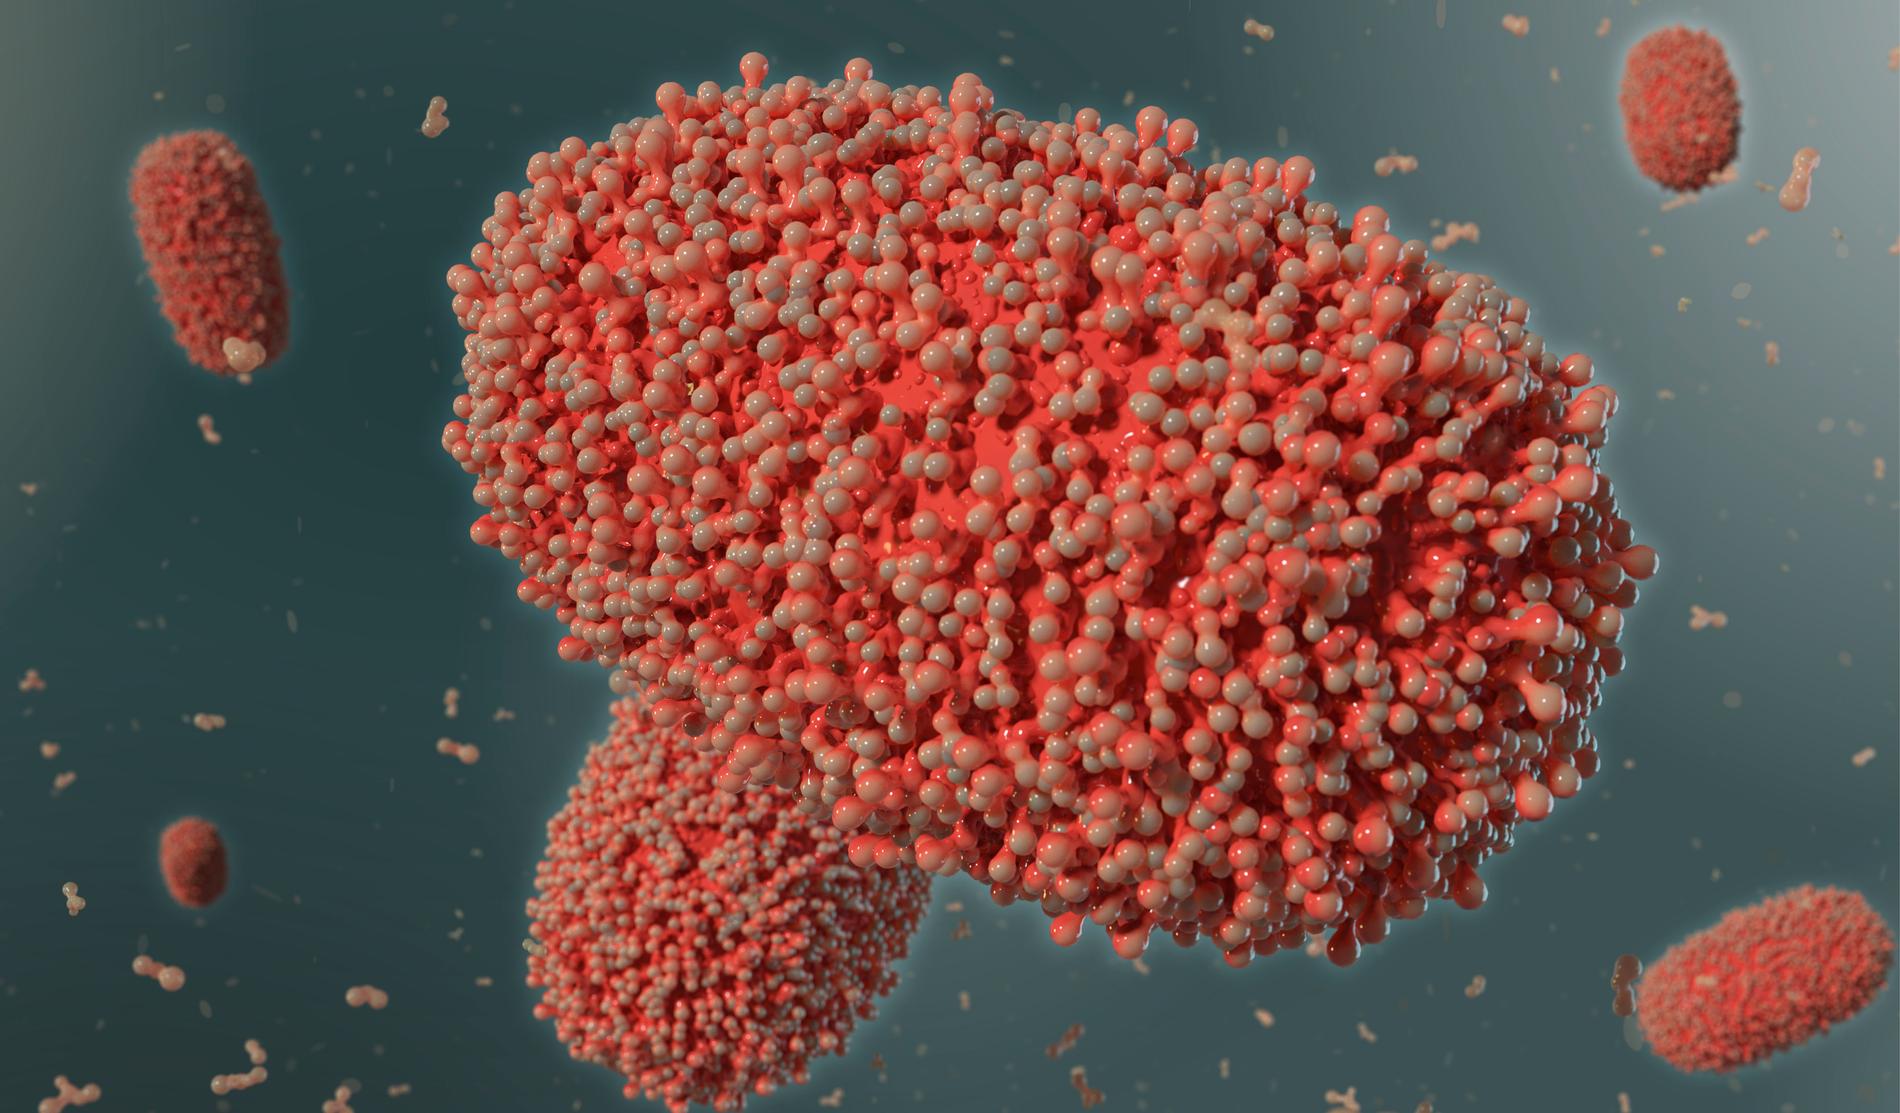 Läkemedlet mot apkoppor som nu finns i Sverige har efterfrågats av läkare. Här en 3D-illustration av apkoppsviruset.